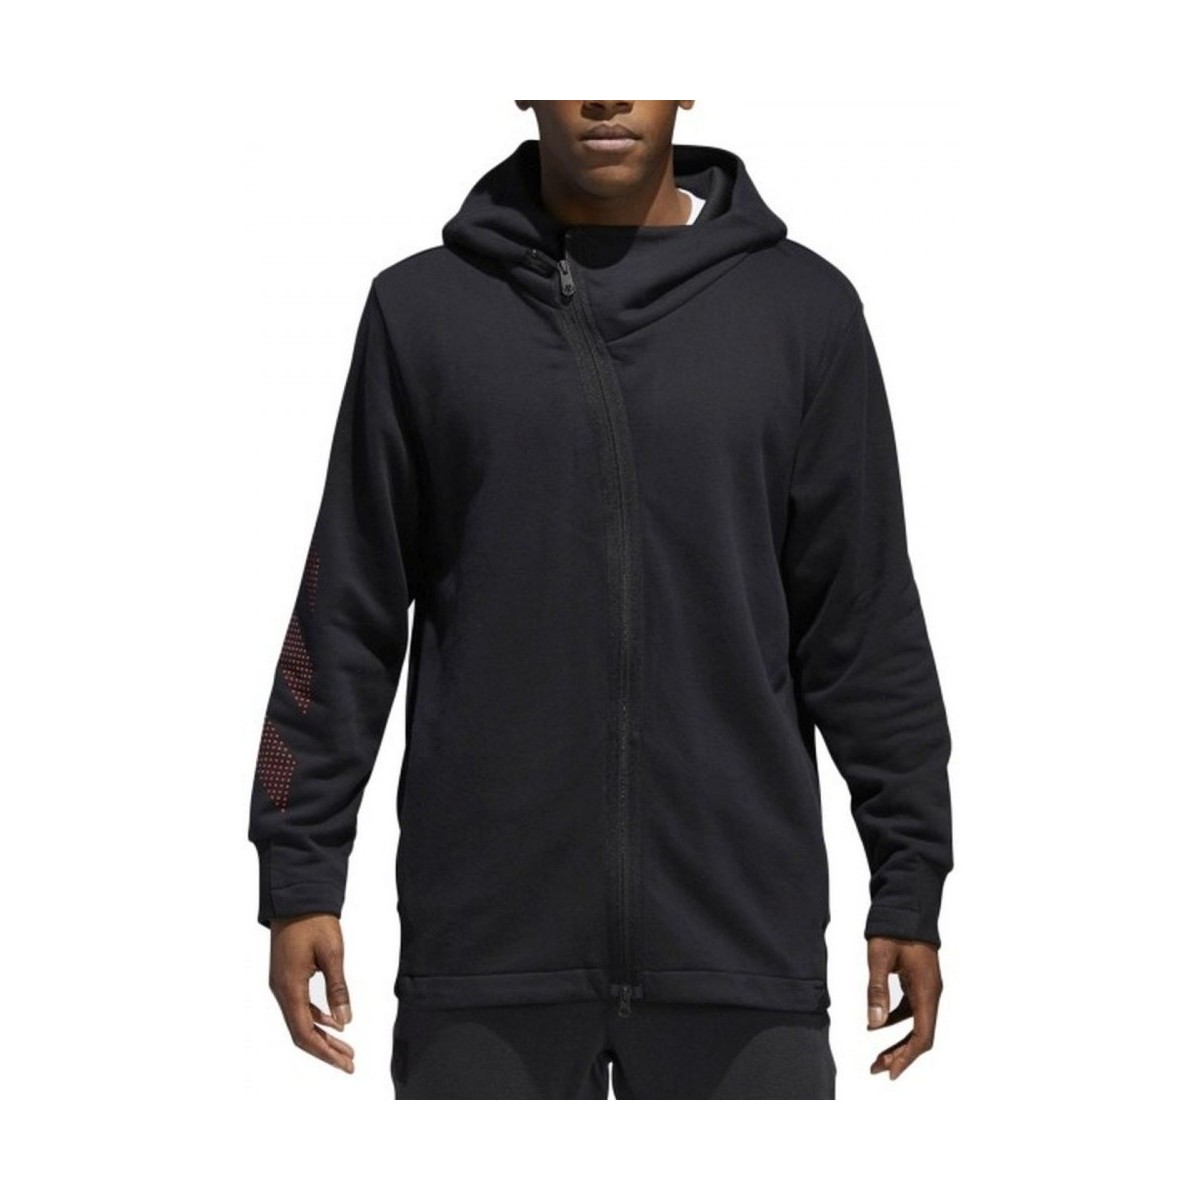 Textiel Heren Sweaters / Sweatshirts adidas Originals MVP Shooter Hoodie Vol. 2 Zwart